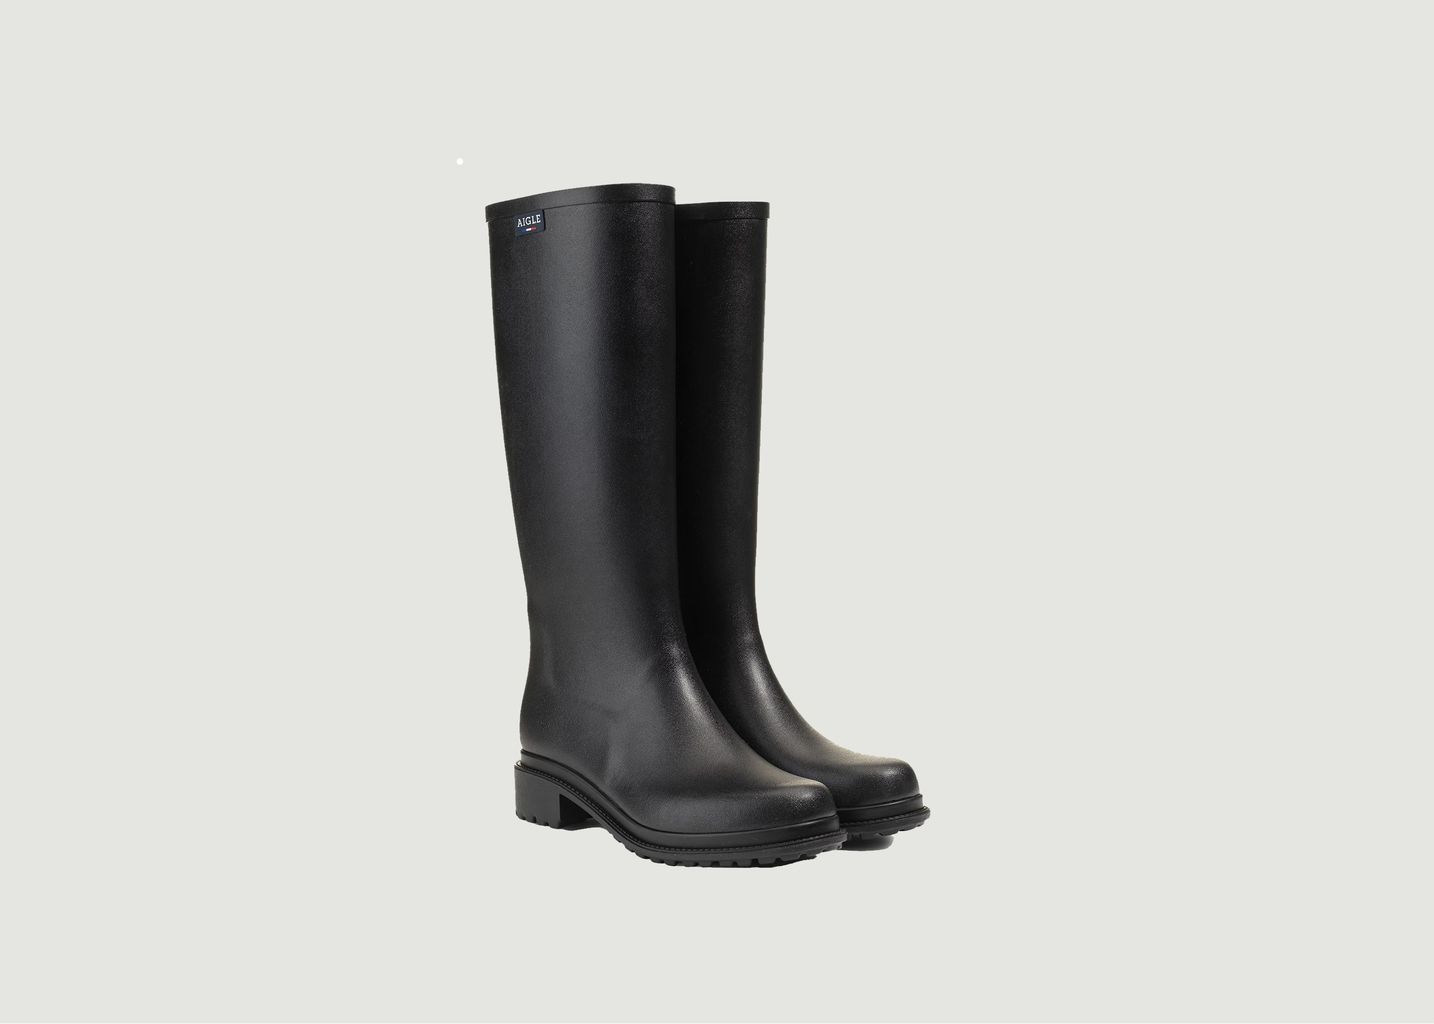 Fulfeel rain boots - Aigle